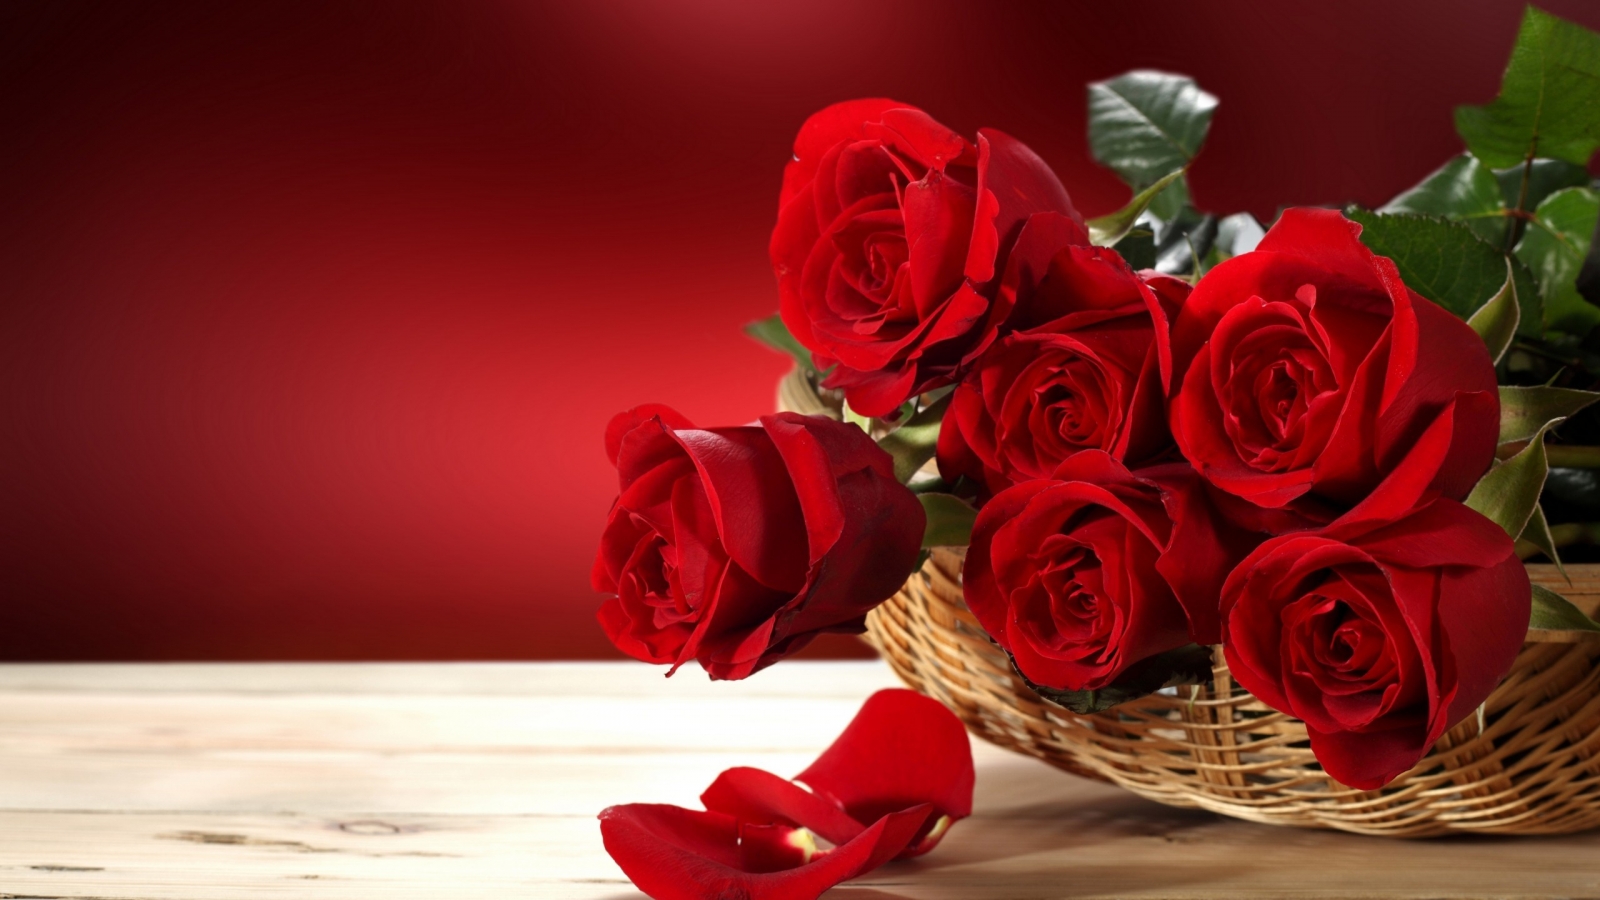 Fresh Red Roses for 1600 x 900 HDTV resolution